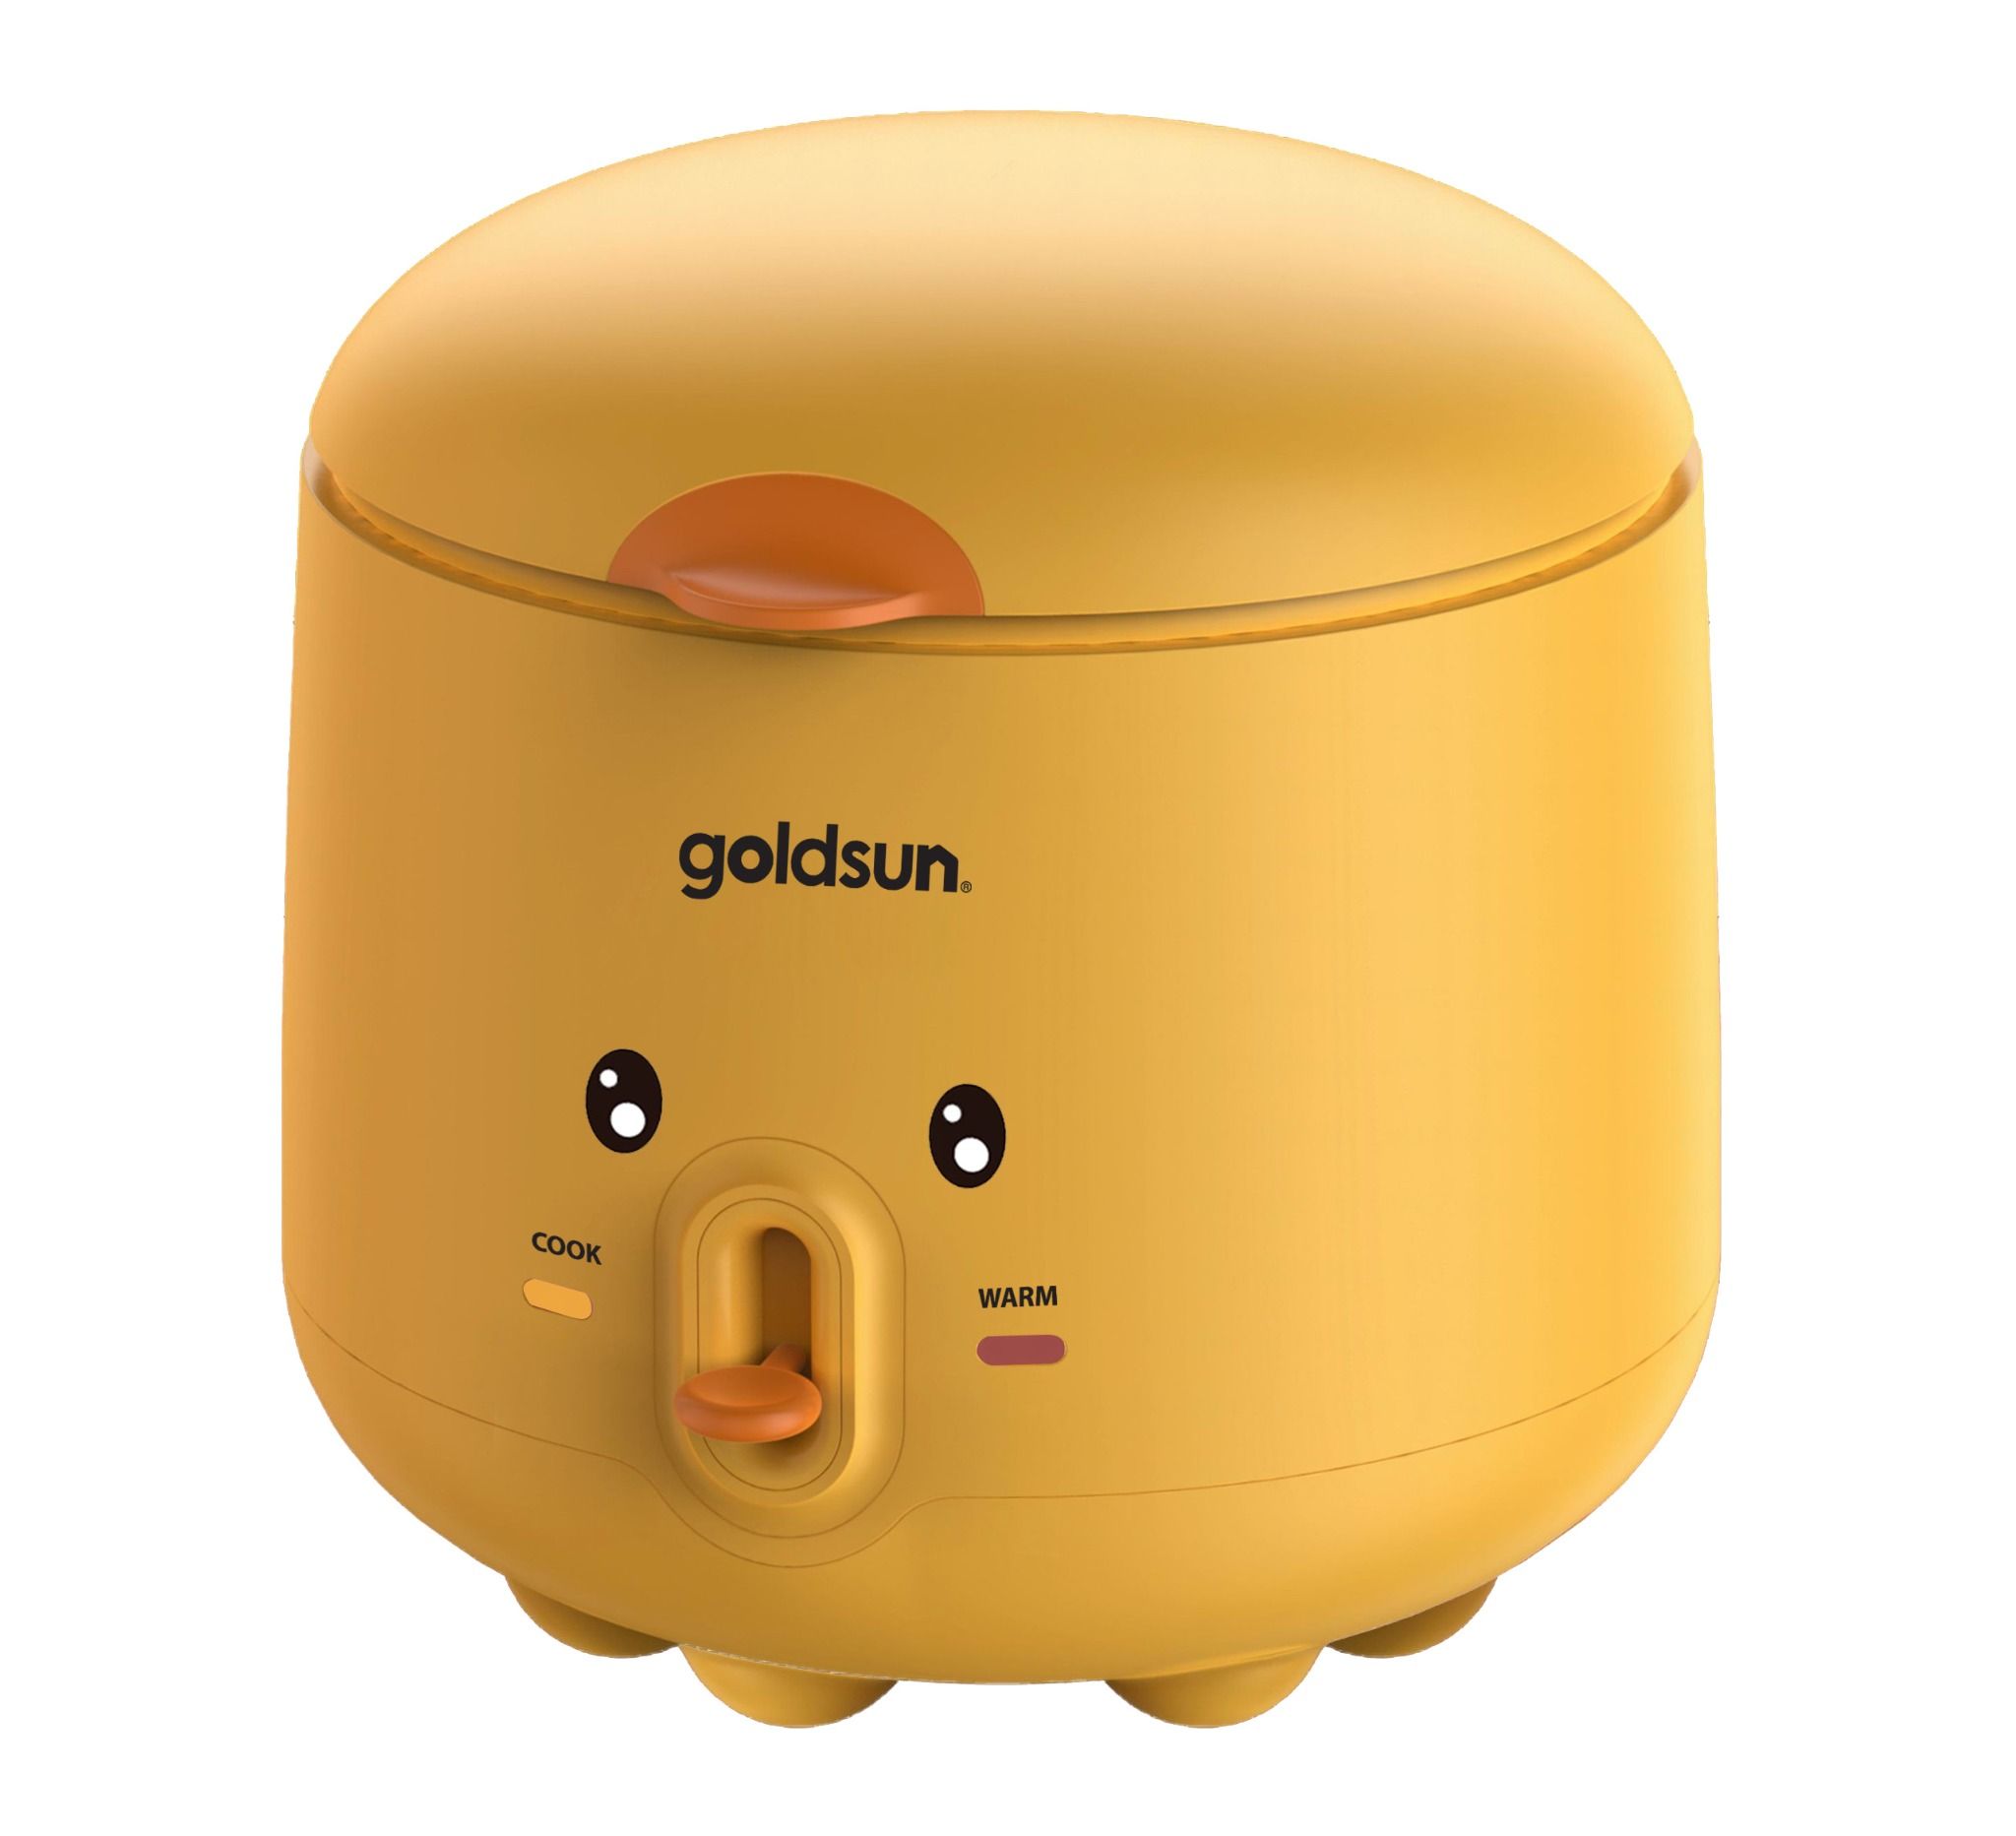  Nồi cơm điện Goldsun GRC5020 